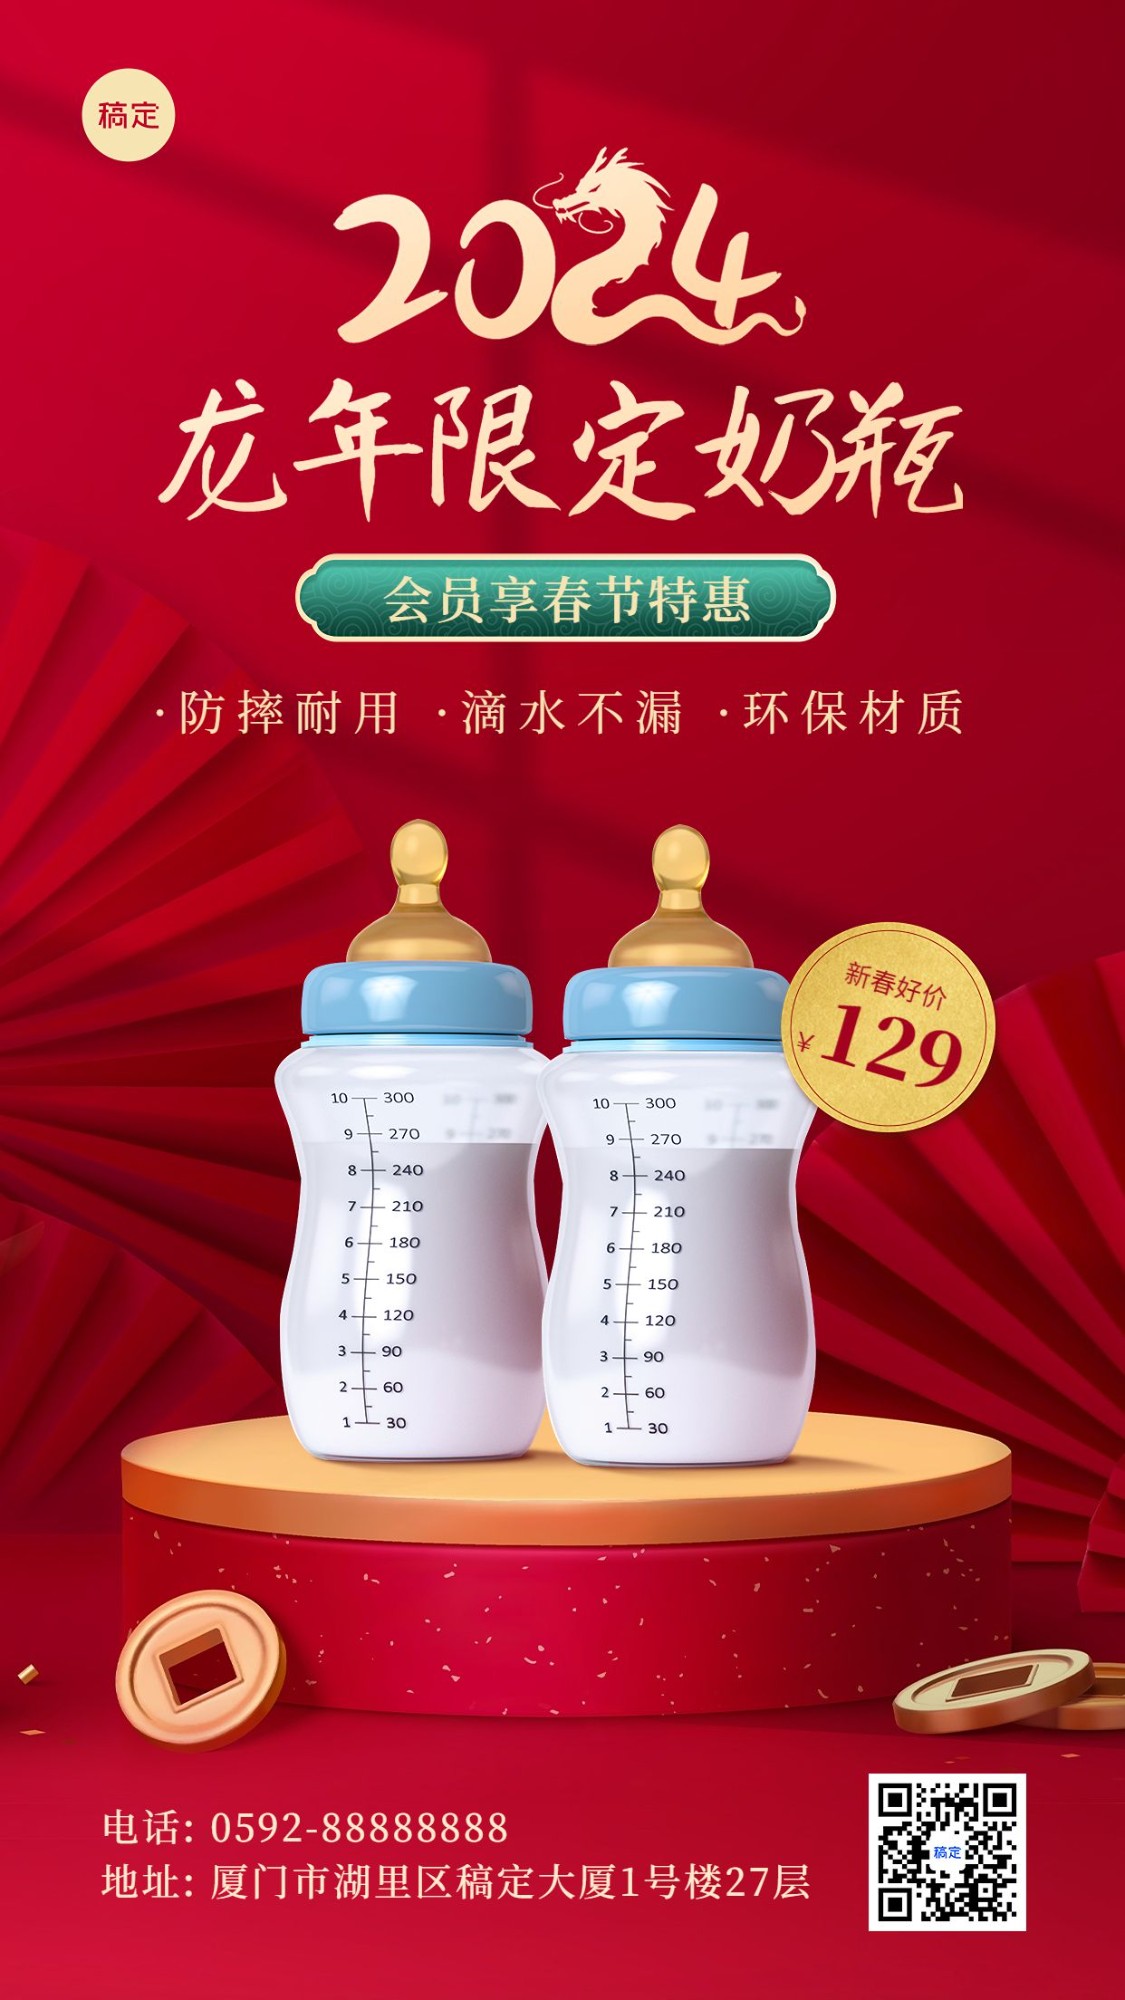 春节龙年节日营销产品展示手机海报